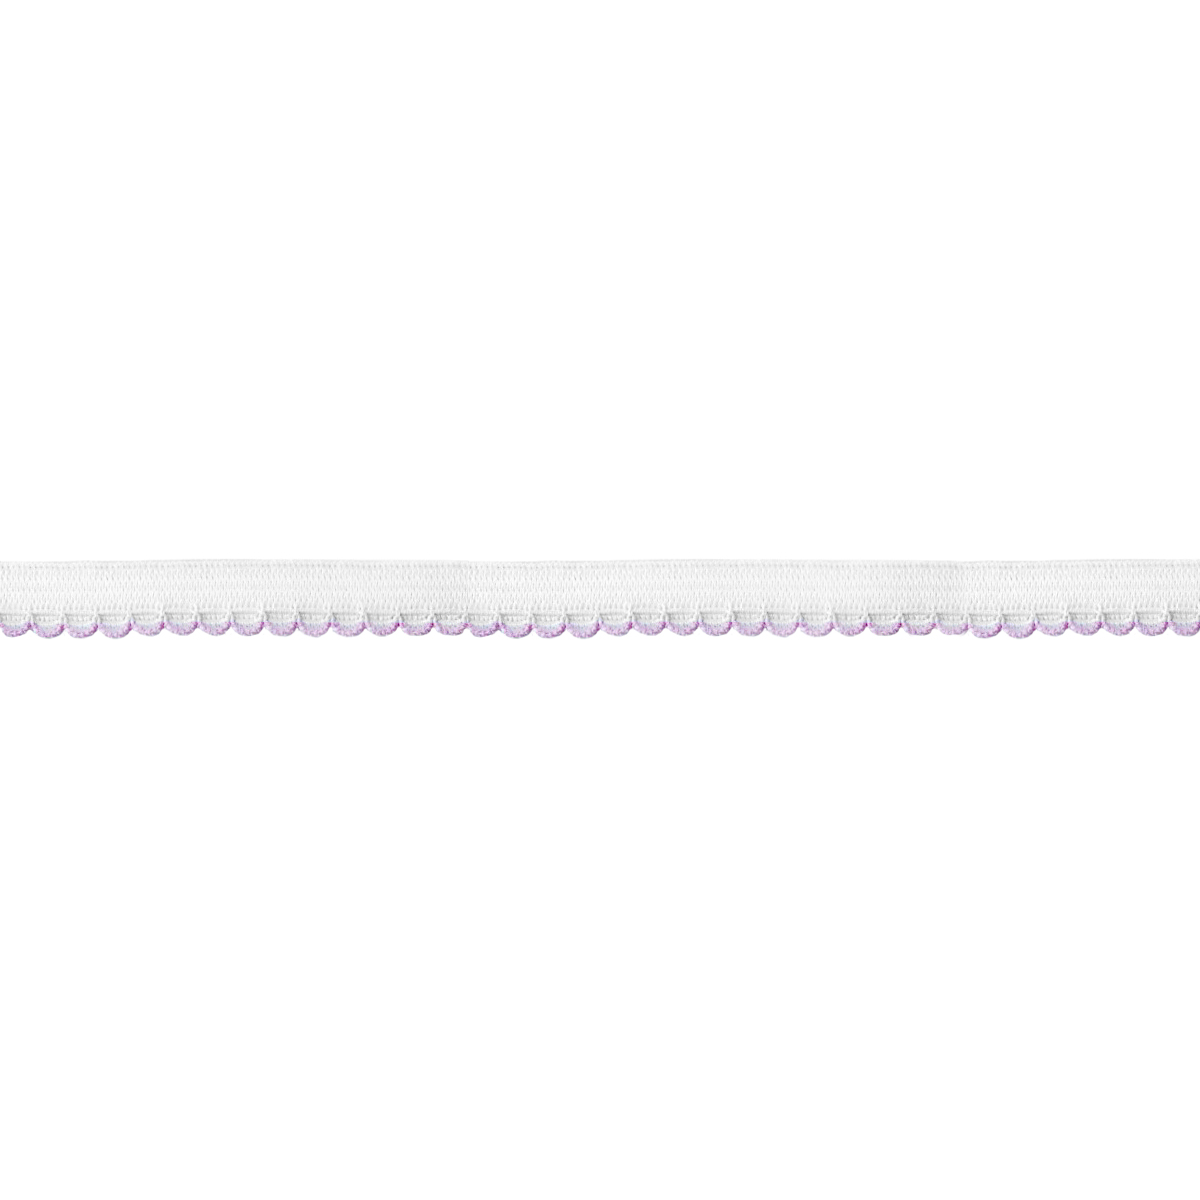 Резинка ажурная для нижнего белья арт. 9112-010 шир. 10 мм бело/розовая (уп. 50 м)